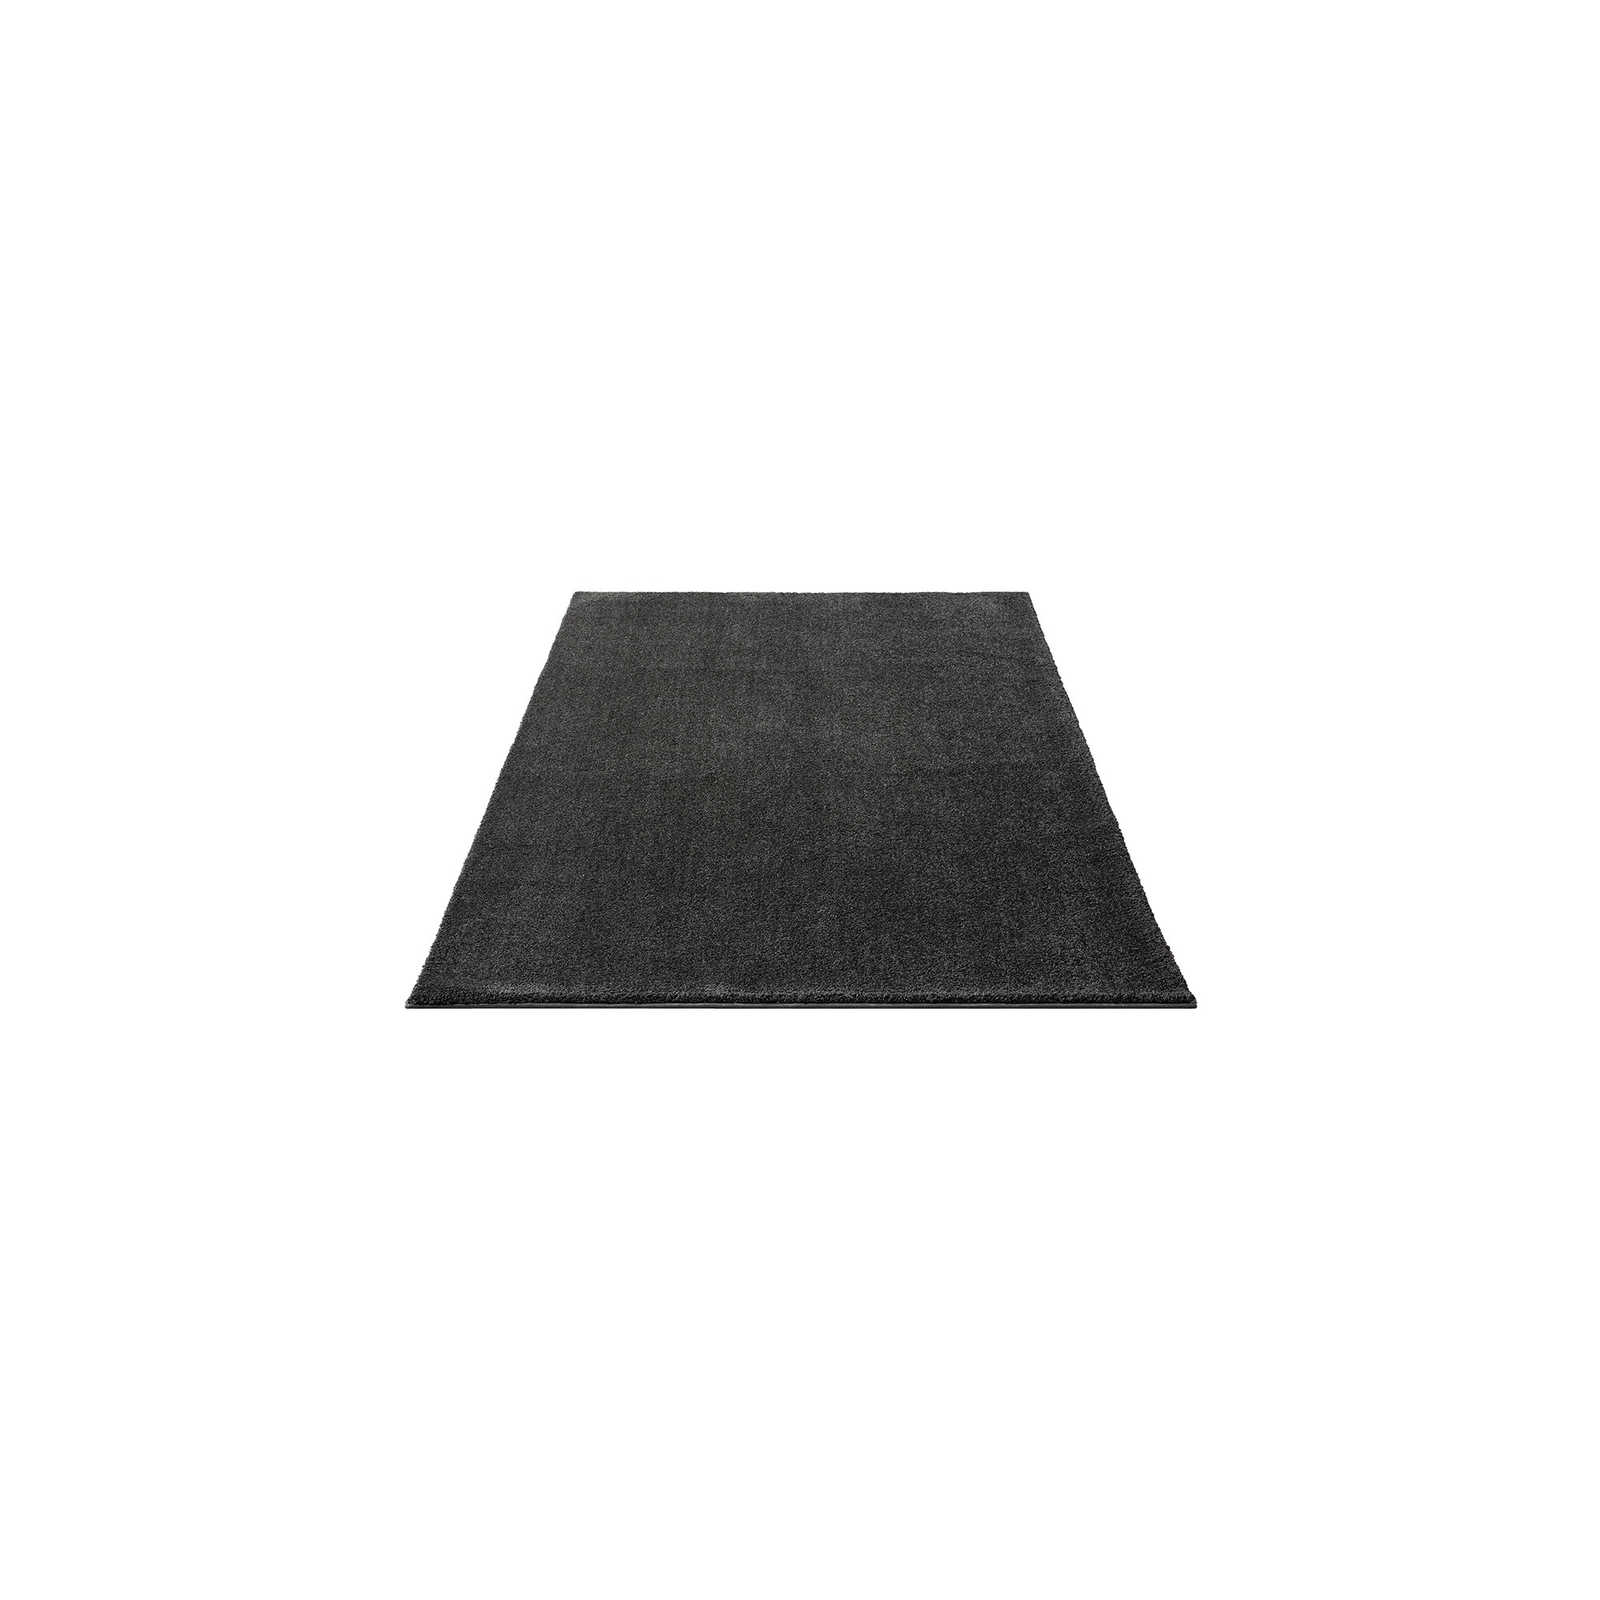 Weicher Kurzflor Teppich in Anthrazit – 150 x 80 cm
